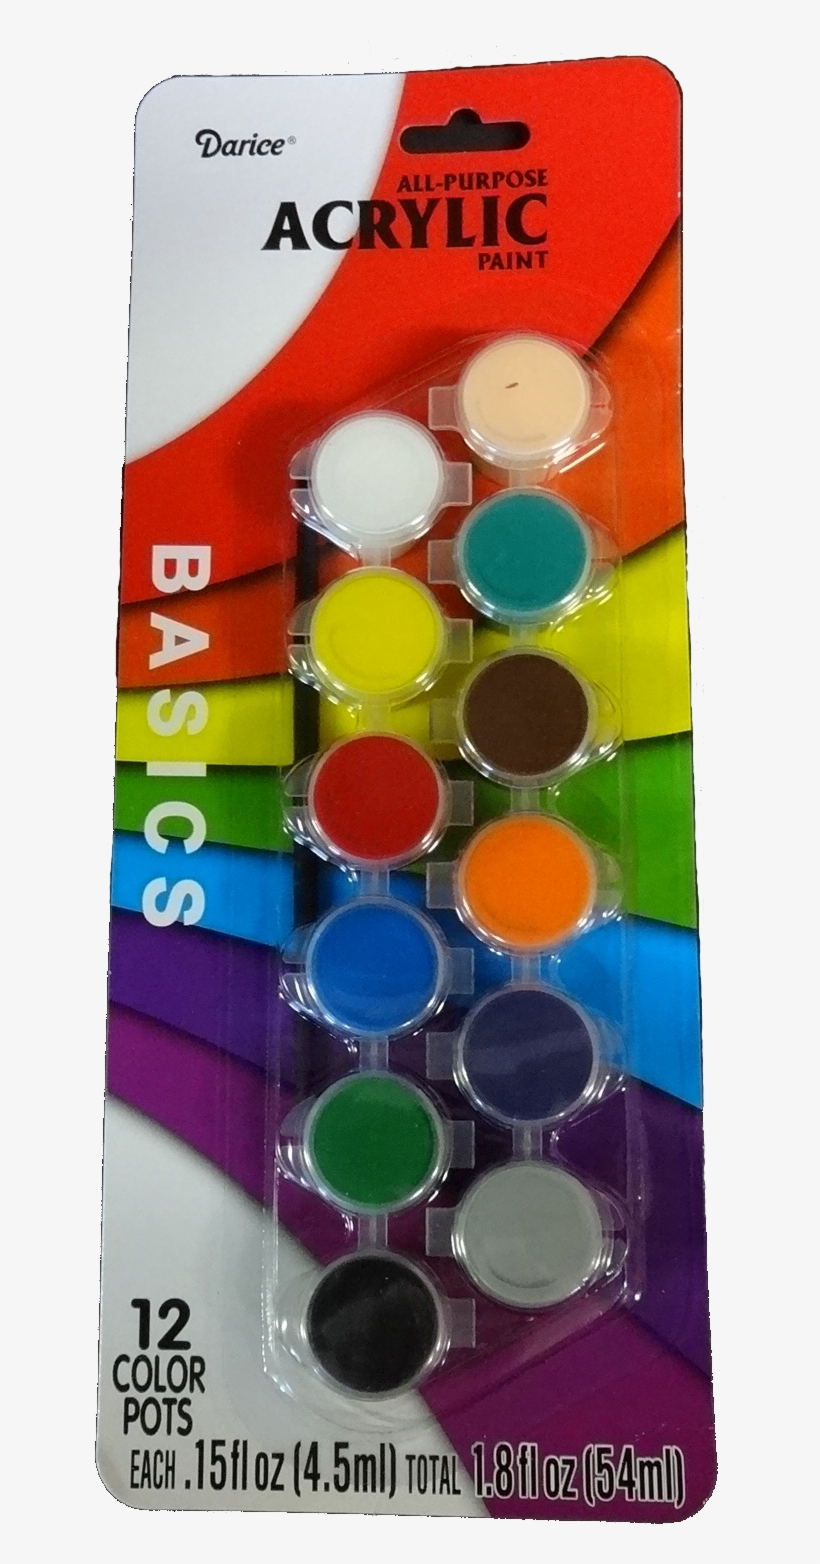 Ps 1180, Potstick Art Kit - Darice Acrylic Paint Pots Basic 12 Colors, transparent png #4658226